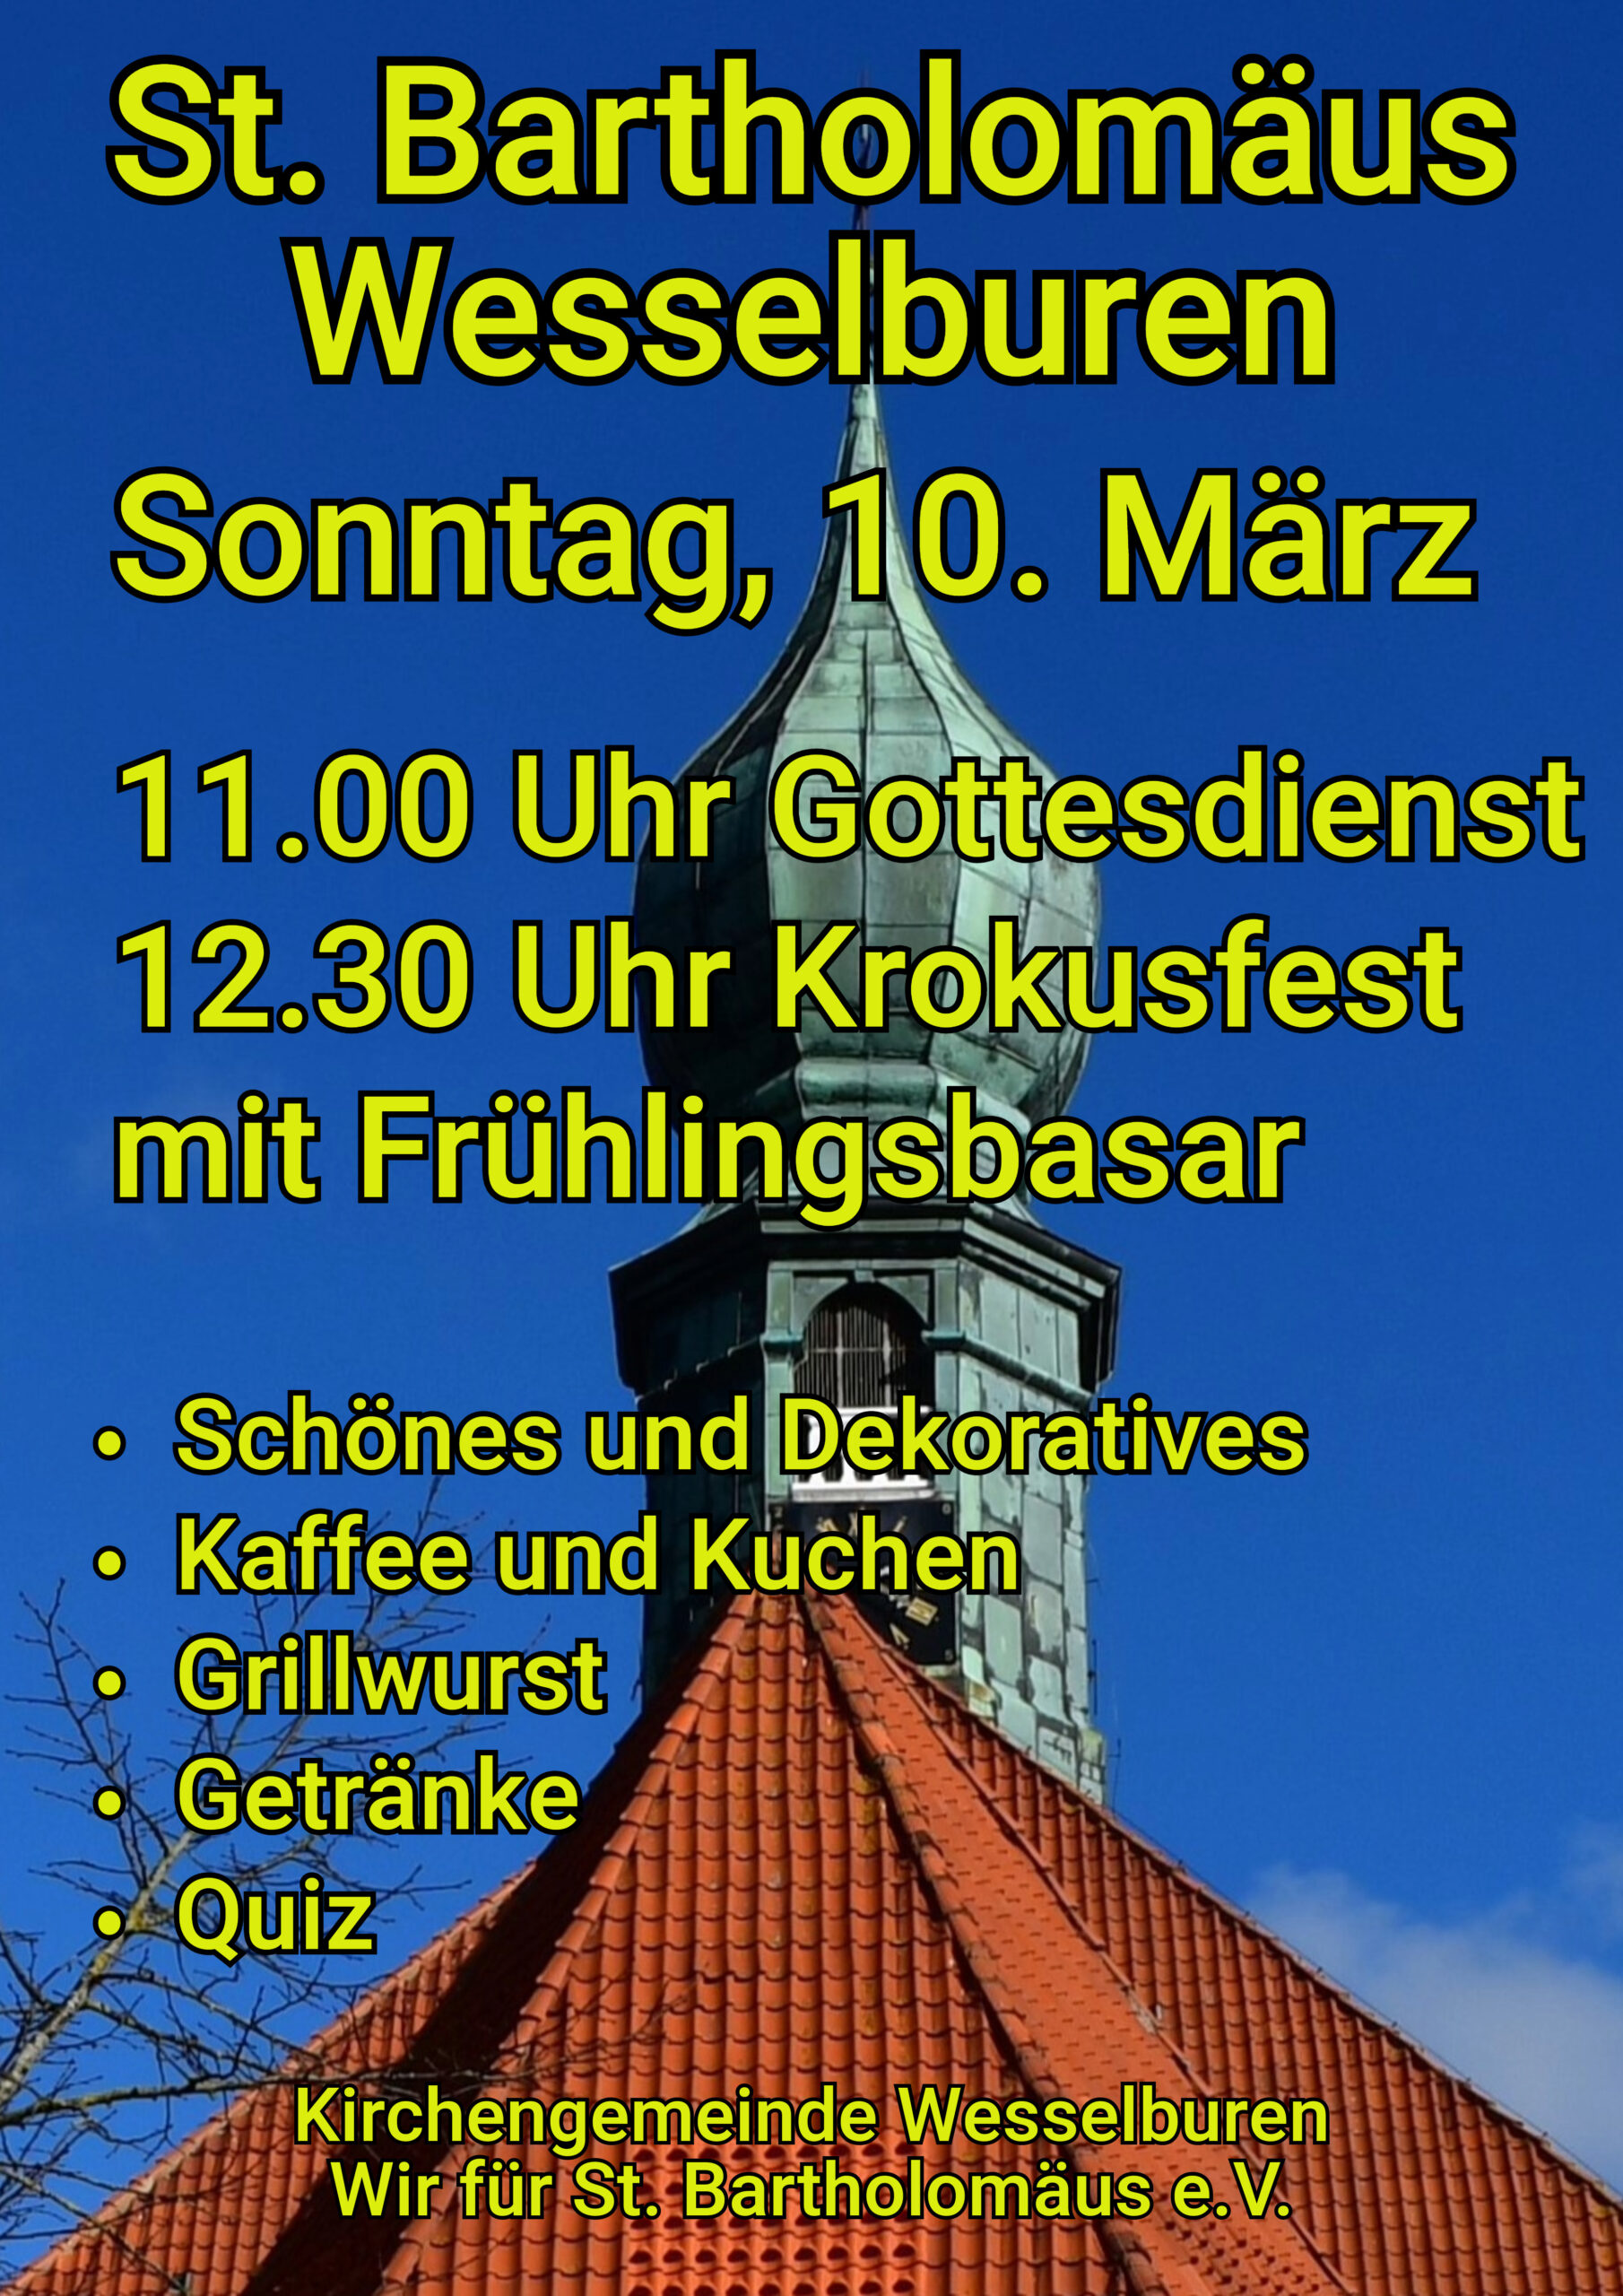 Einladung zum Krokusfest, Sonntag 10. März um 12:30 uhr in Wesselburen